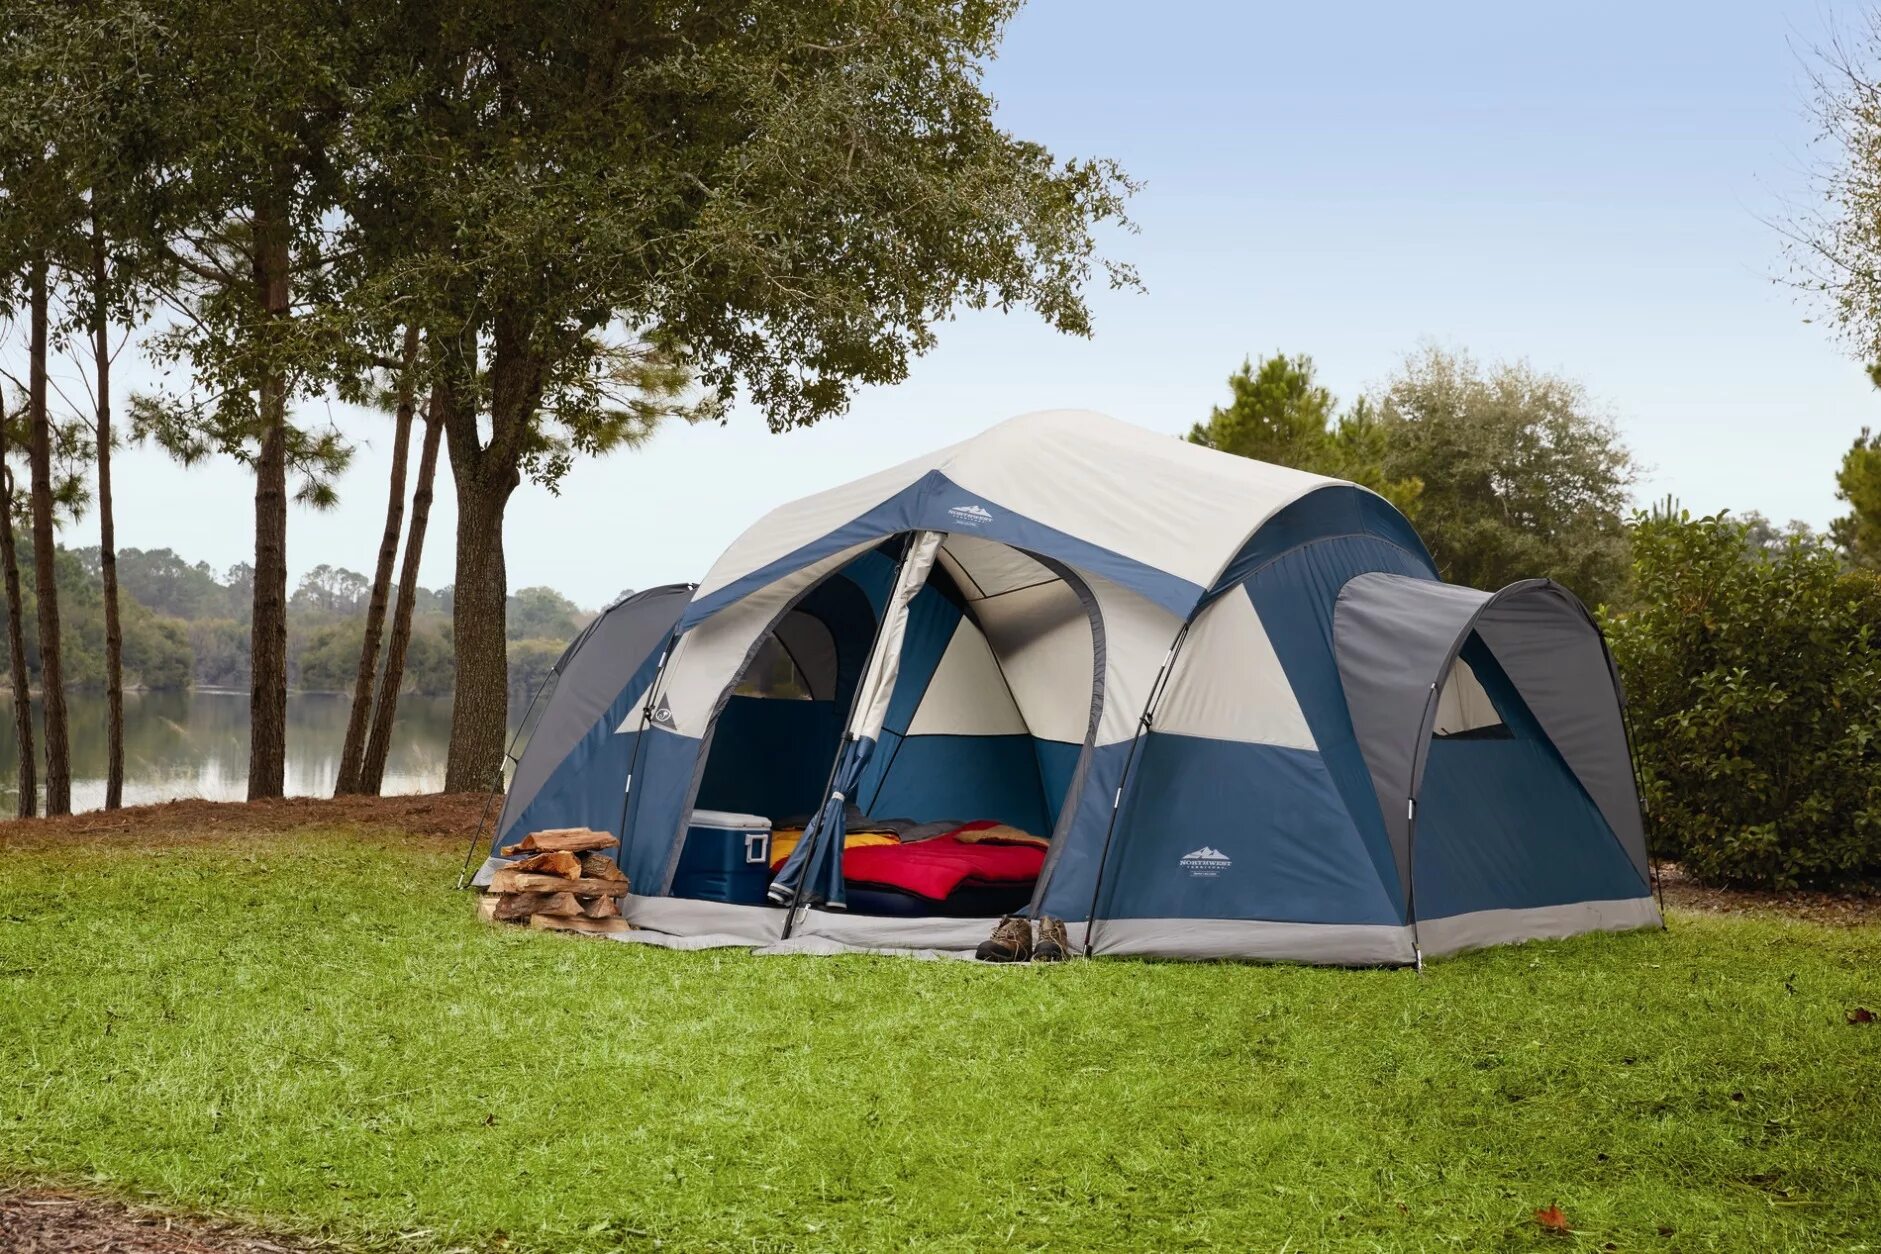 Camp go camping перевод. Палатка papallona Delta Cabin PP-206. Палатка Northwest Territory. Палатка Camping Tent. Палатка campact ten Lake trveler 3.